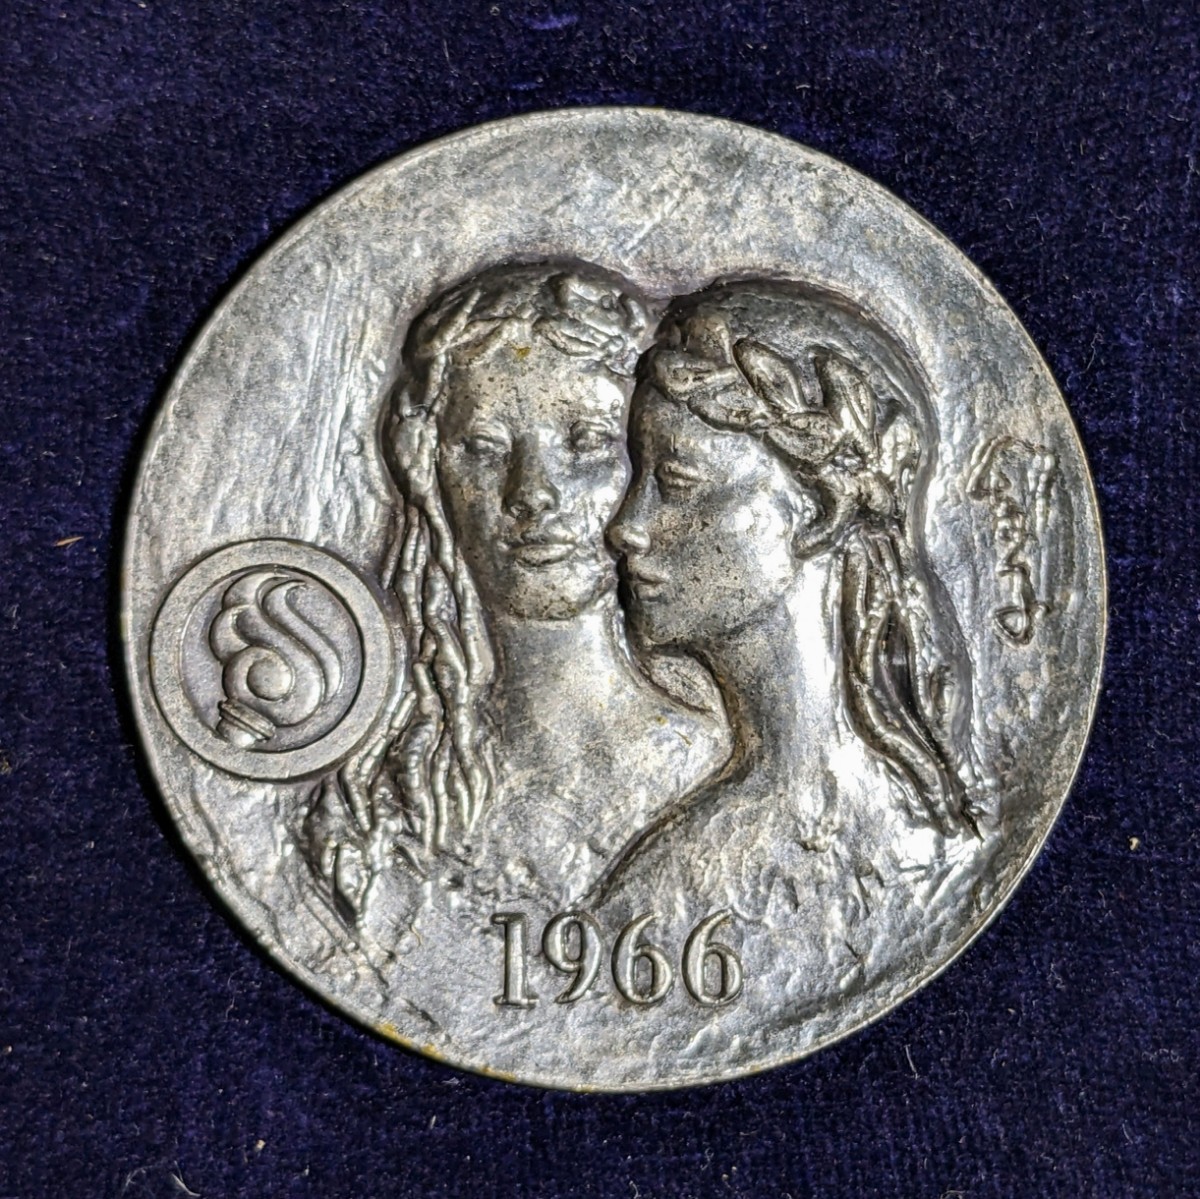 第21回国民体育大会 記念メダル 大分県 昭和41年 1966年 昭和レトロ当時物の画像1